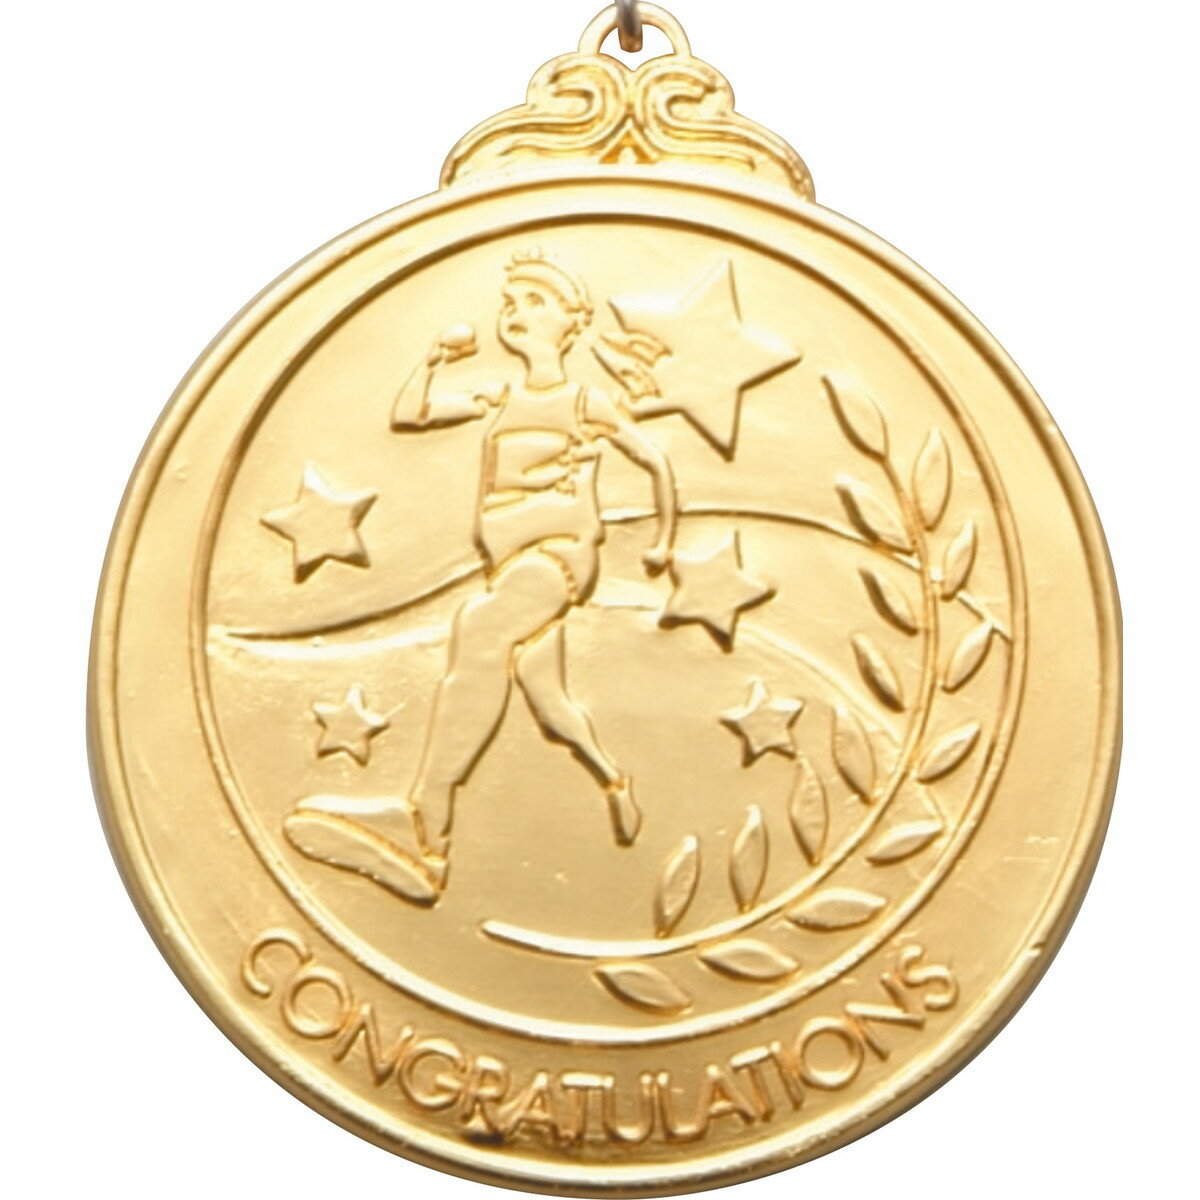 Artec(アーテック) メダル 「陸上」 金 #1839